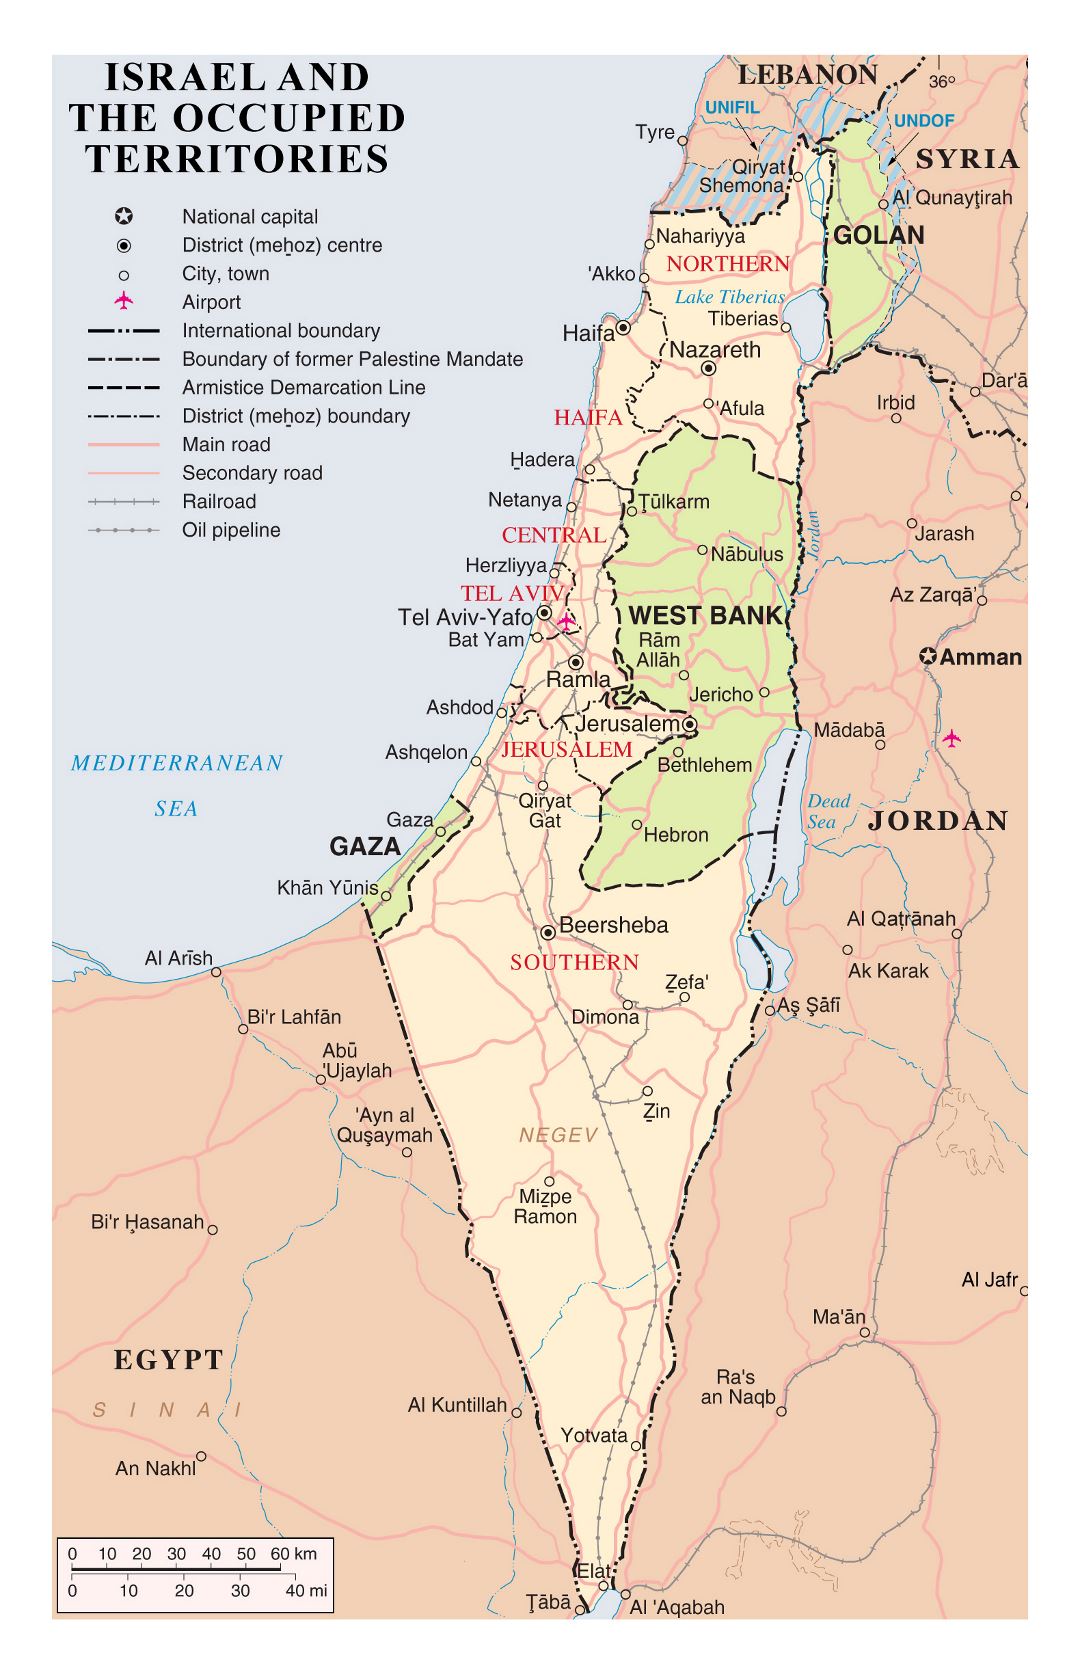 Grande detallado mapa político y administrativo de Israel y los territorios ocupados con carreteras, ciudades, aeropuertos y otras marcas